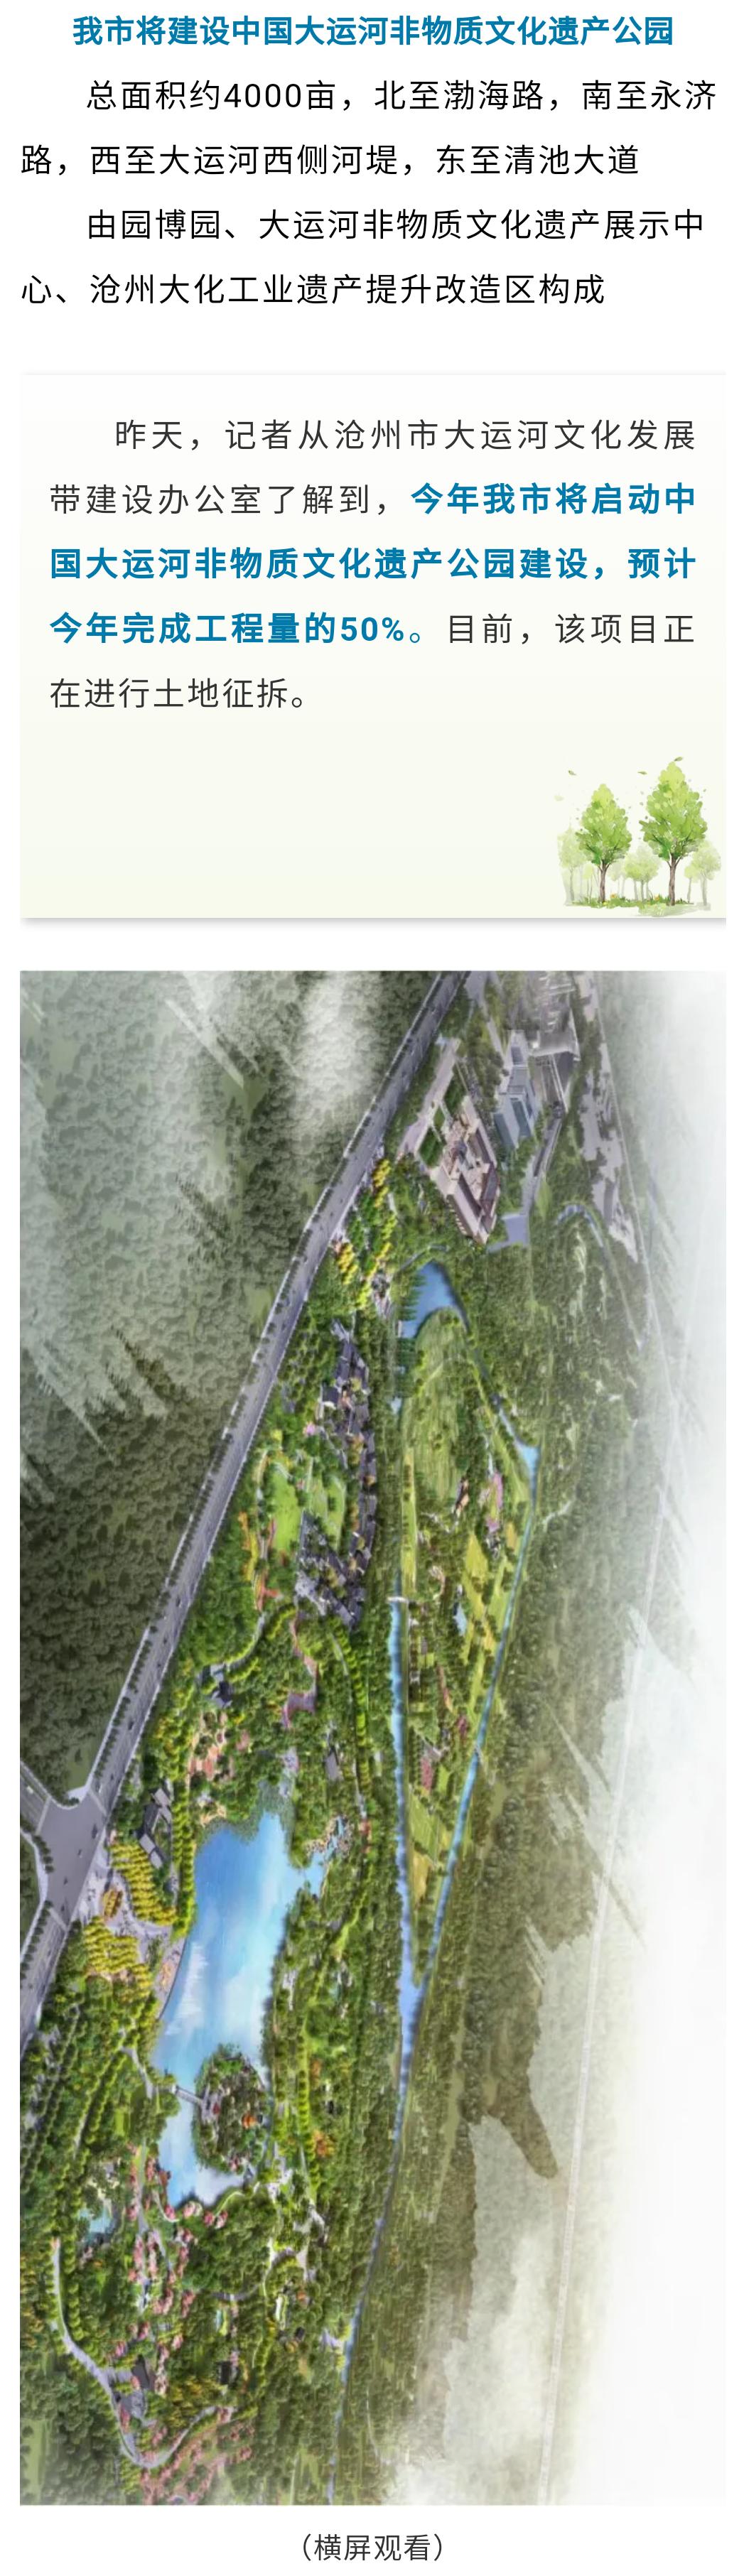 国家级大公园要来了!园博园将成其中一个园中园!沧州城北巨变.